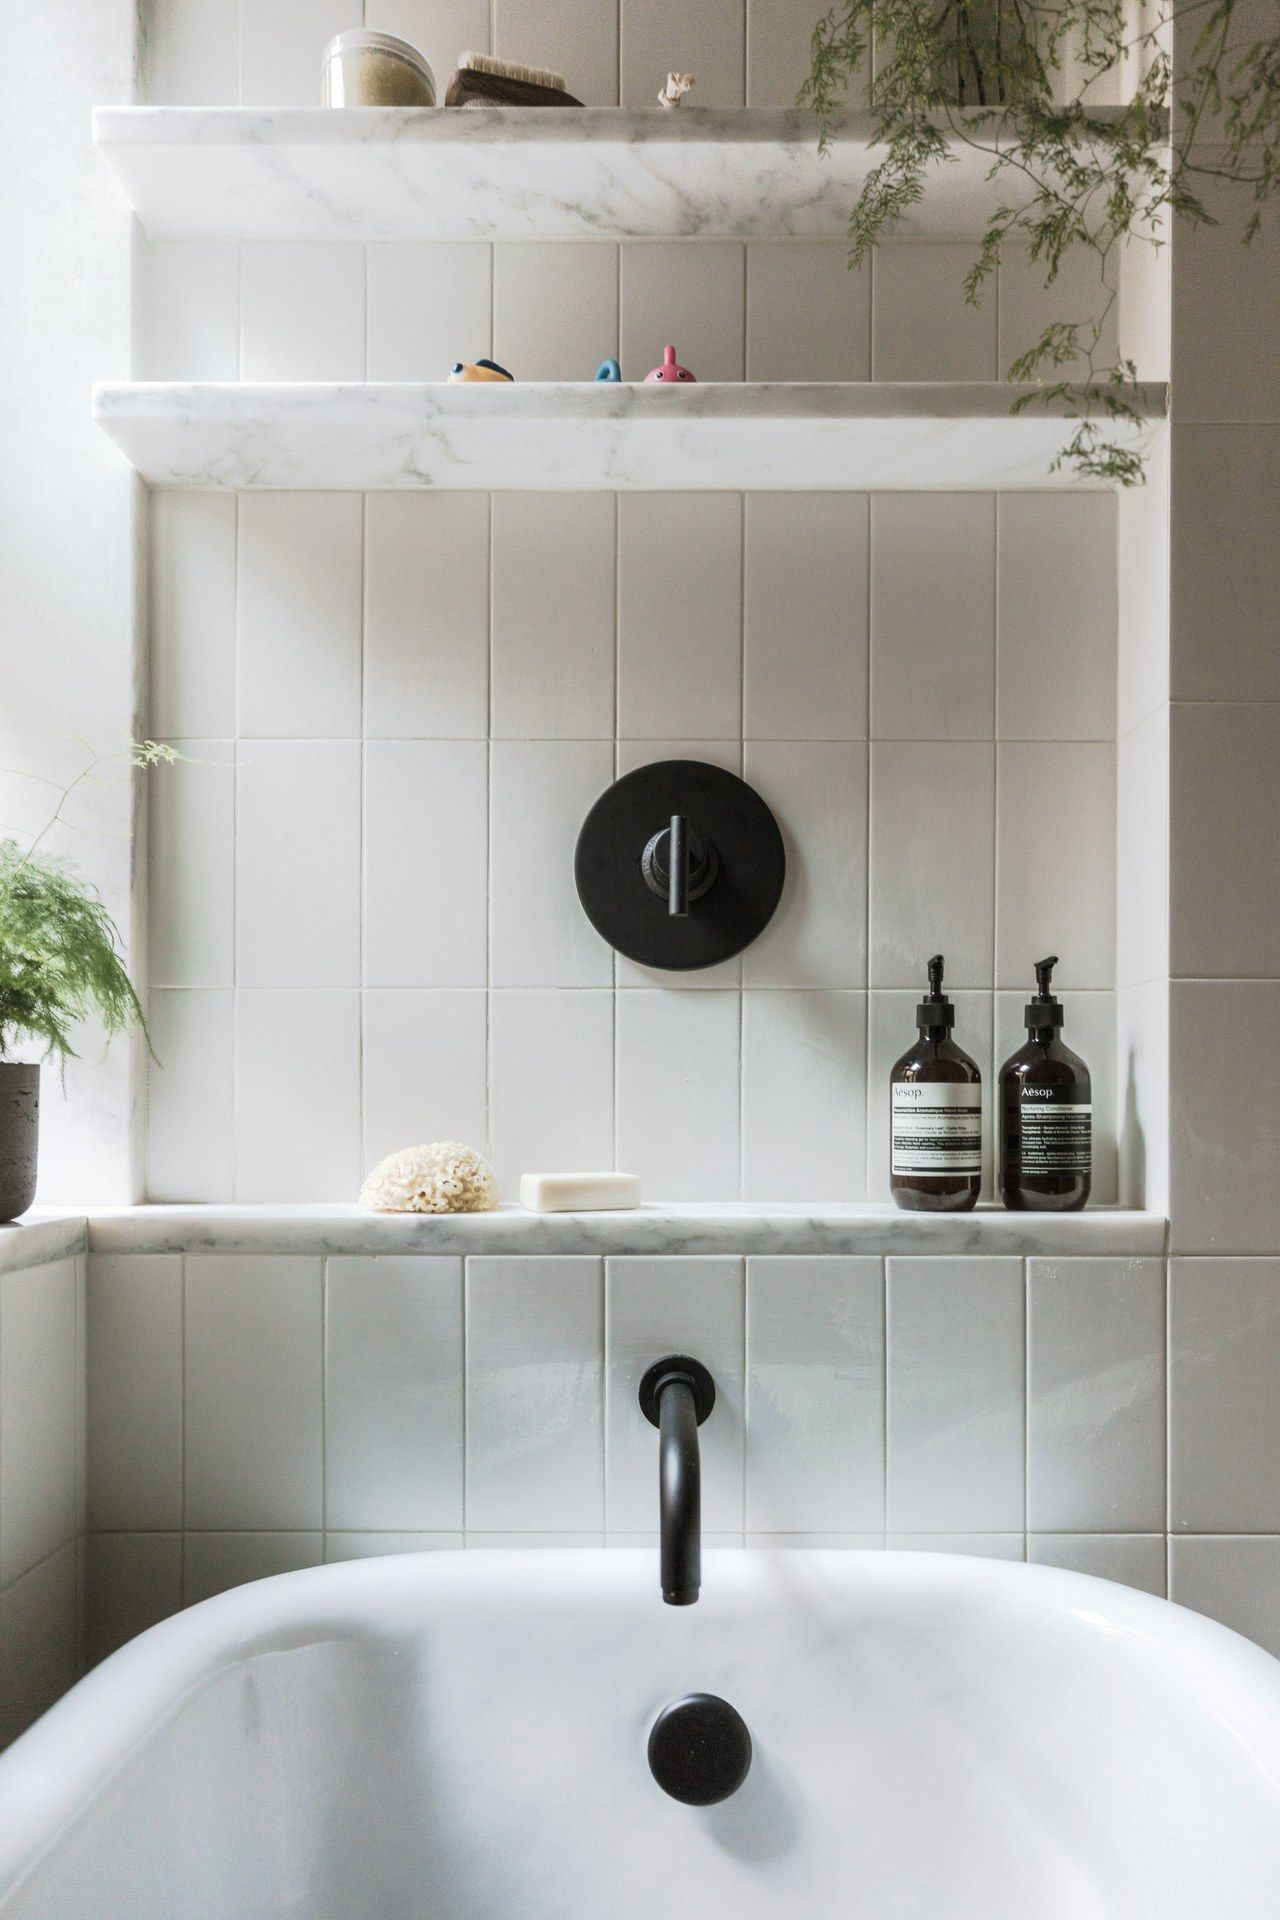 Stylish Bathroom Shelf Ideas - The Most Clever Bathroom Storage